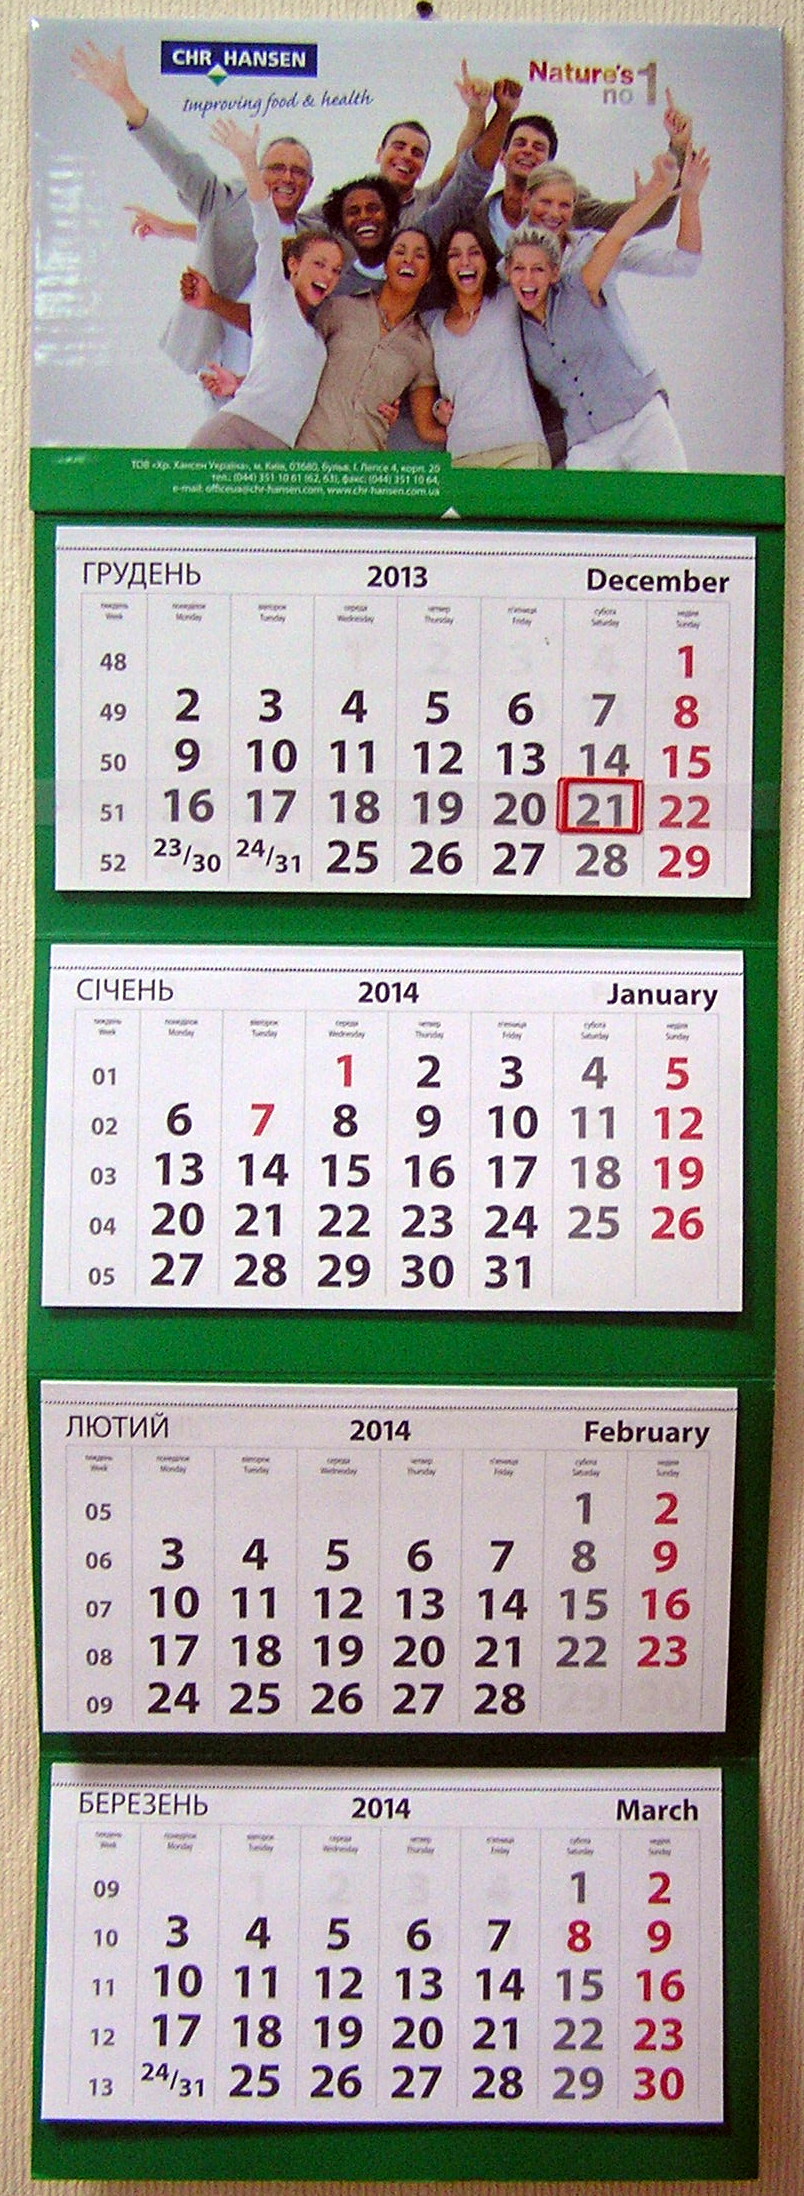 Печать квартальных календарей «CHR HANSEN». Полиграфия типографии Макрос, изготовление квартальных календарей, спецификация 966997-1